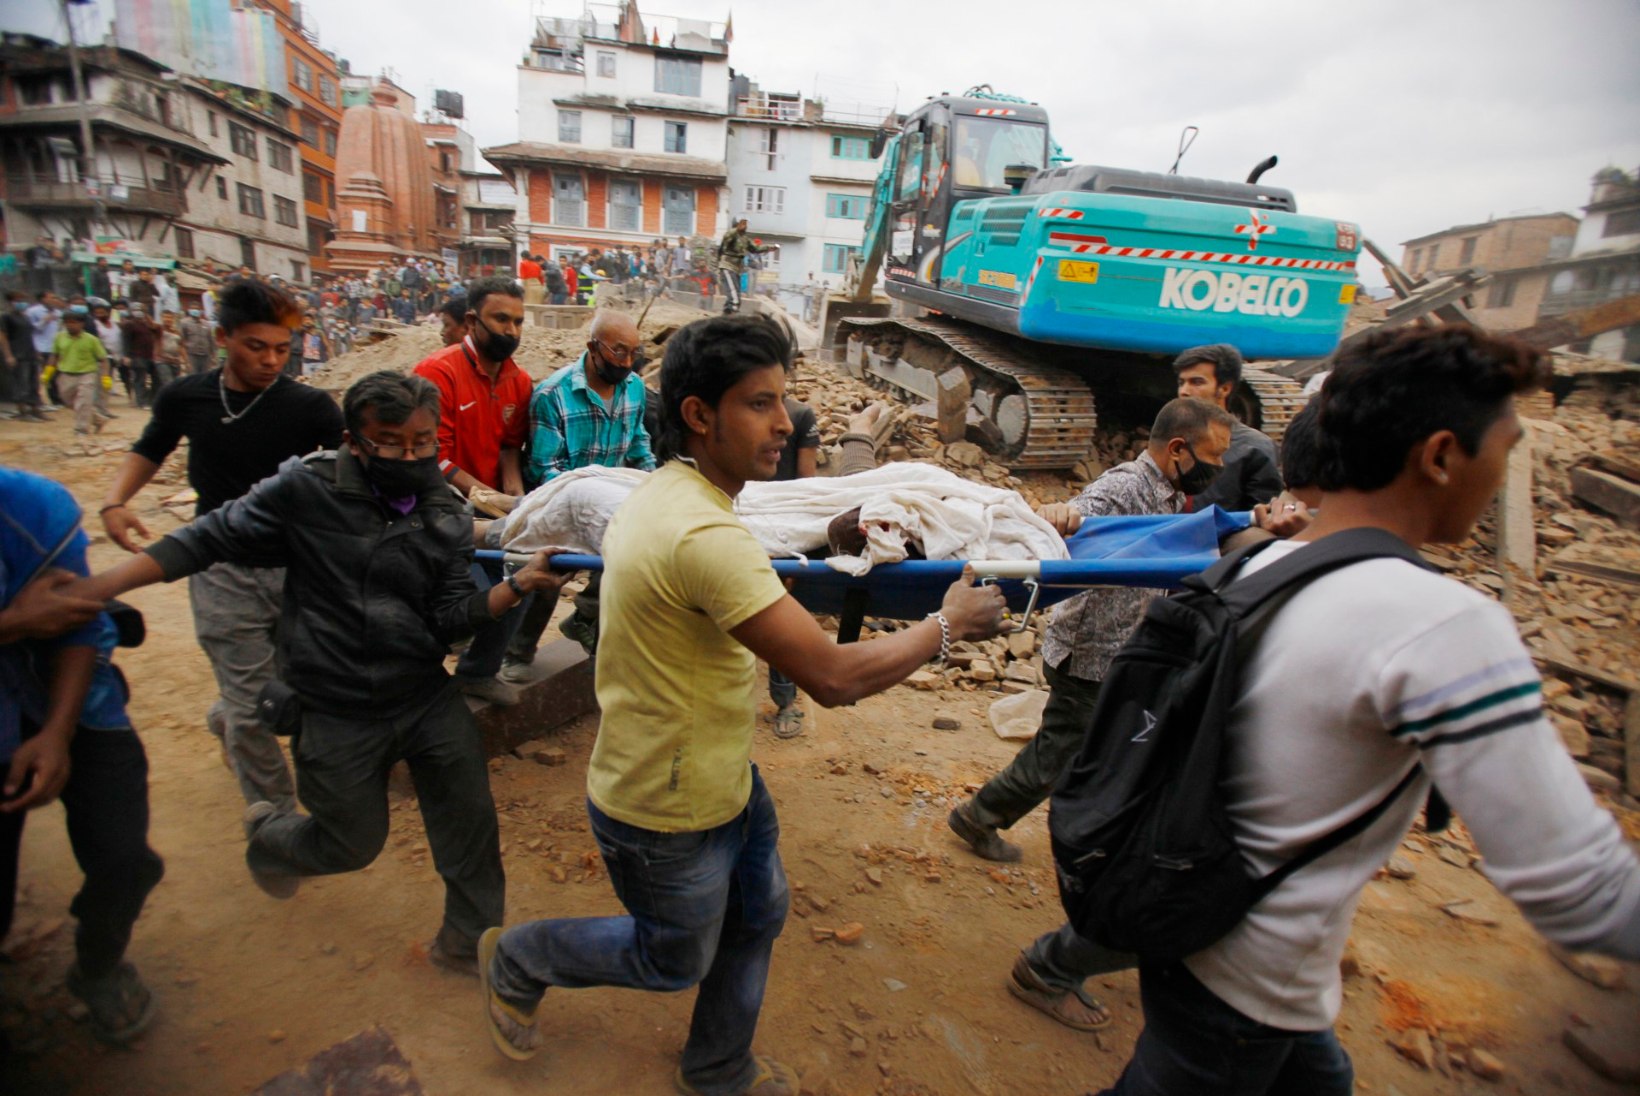 GALERII JA VIDEO | Nepali maavärinaohvrite arv on tõusnud üle 1300